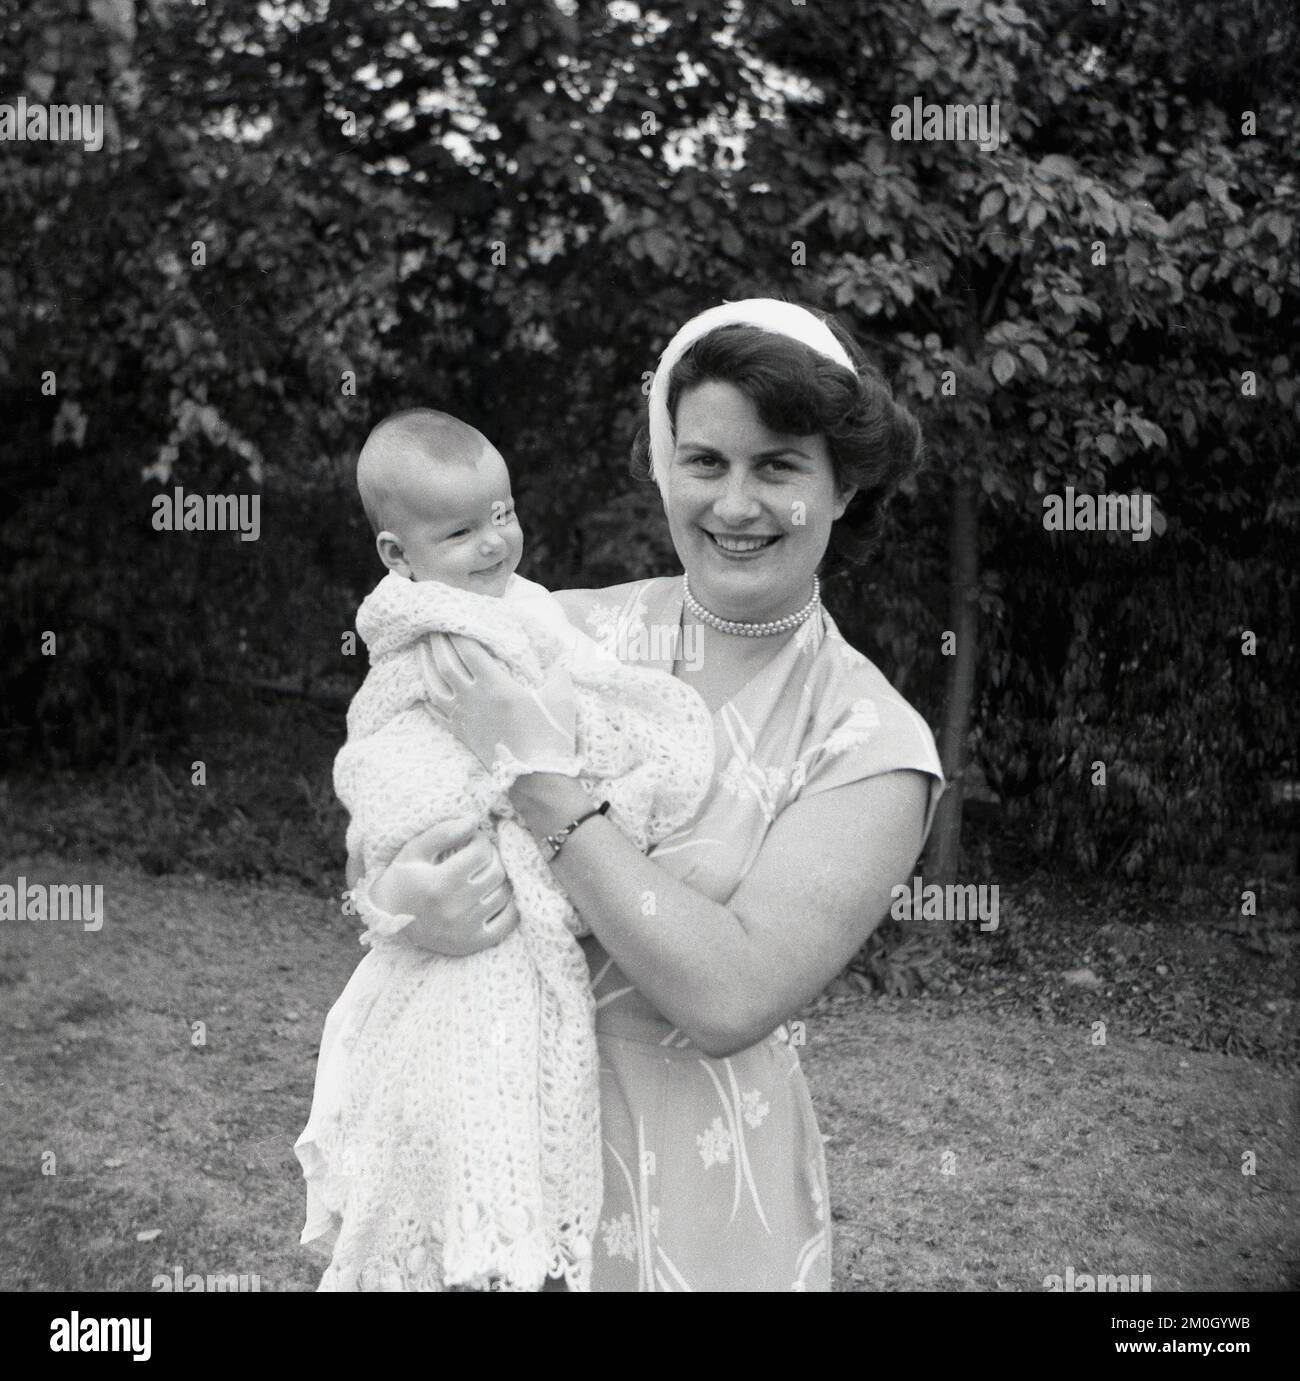 1950s, histórico, bautizo, de pie fuera para una foto, una madre feliz sosteniendo a su recién bautizada niña que está envuelta en un mantón de bebé con un estampado de ganchillo, con una dulce sonrisa en su pequeño rostro, Inglaterra, Reino Unido. Foto de stock